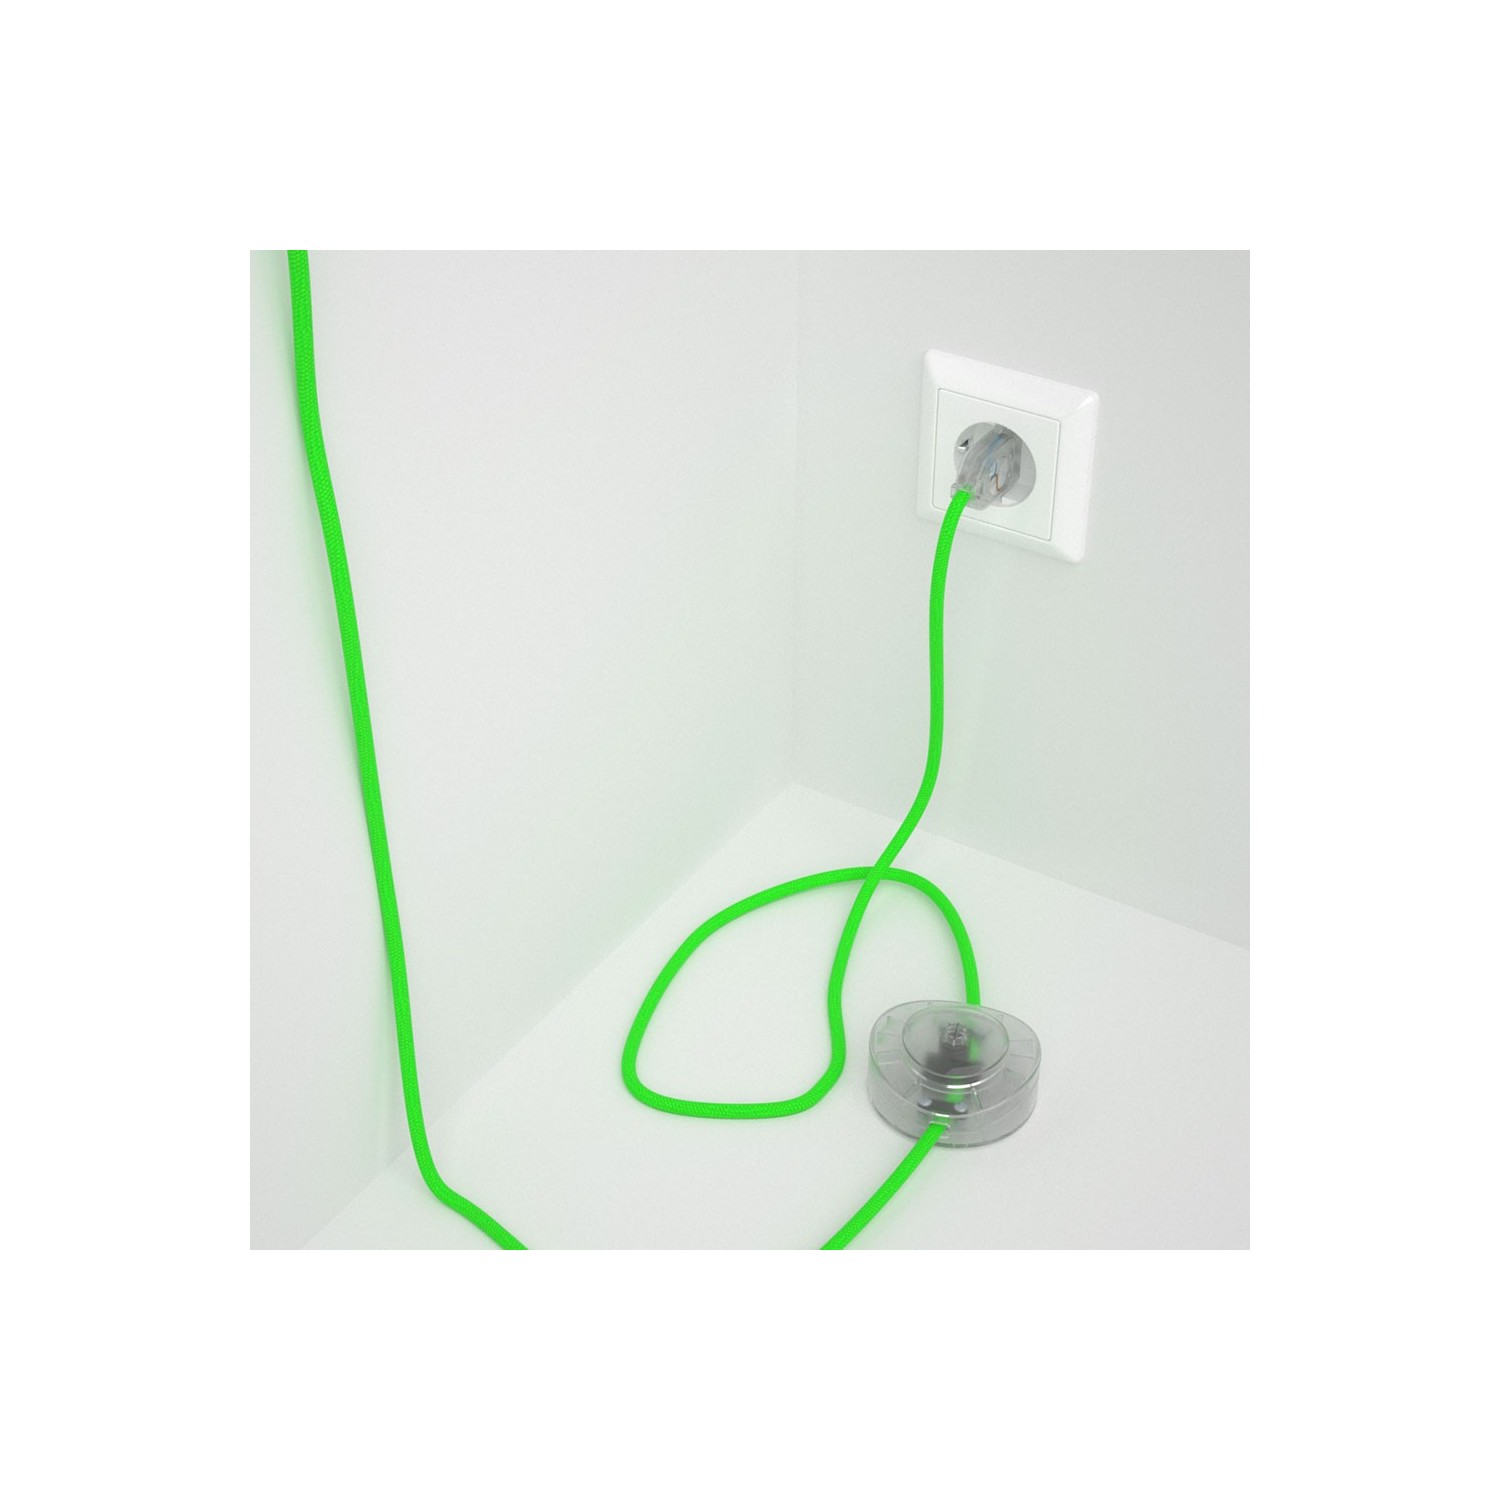 Ledningssæt med fodkontakt, RF06 Neongrøn viskose 3 m. Vælg farve på kontakt og stik.